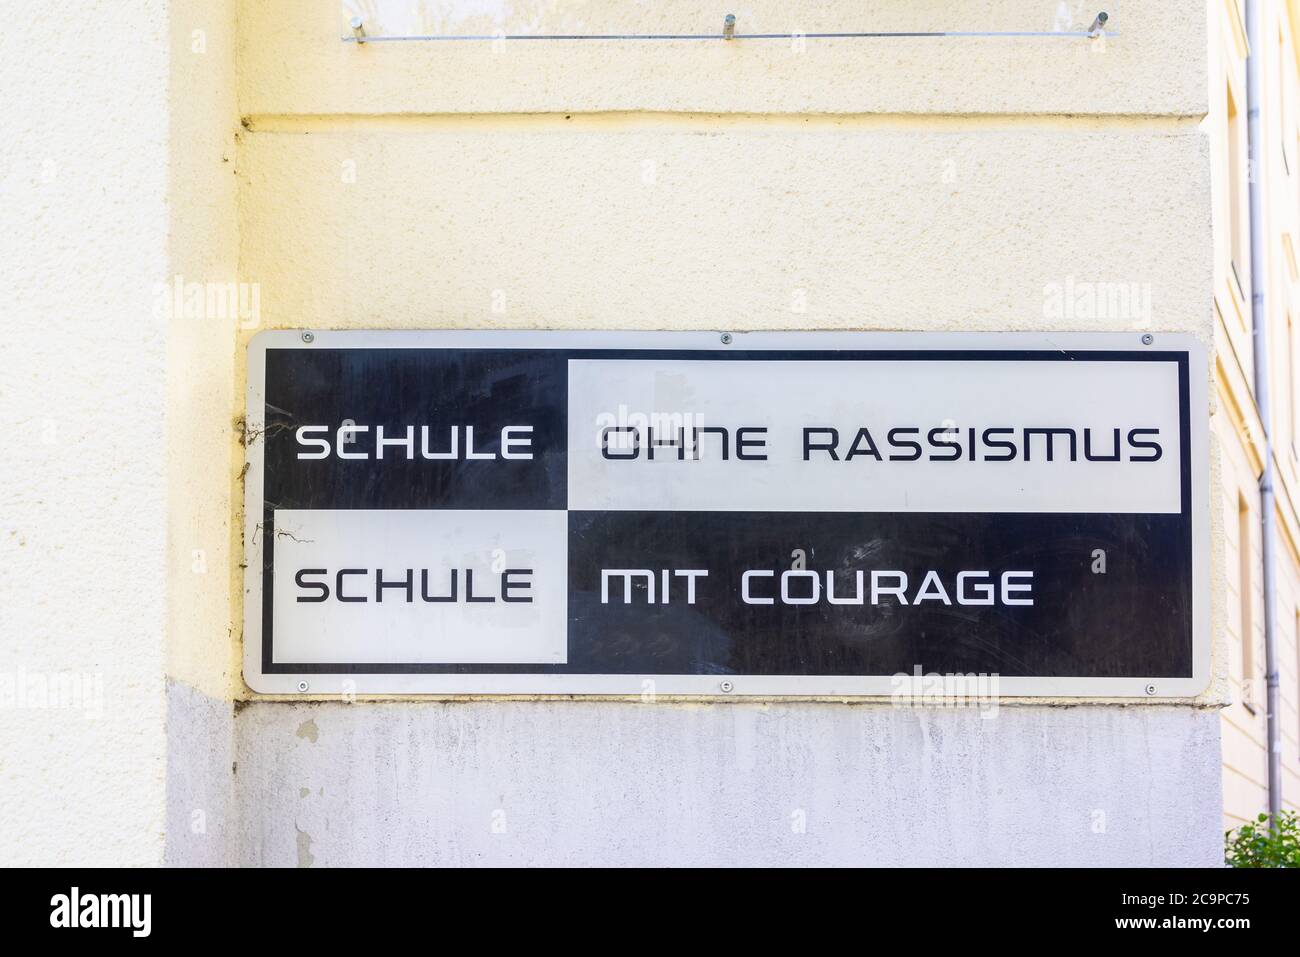 Schule ohne Rassismus, Schule mit Courage Schild - Schule ohne Rassismus, Schule mit Courage Schild vor einer deutschen Hochschule in Berlin, Deutschland, Europa Stockfoto